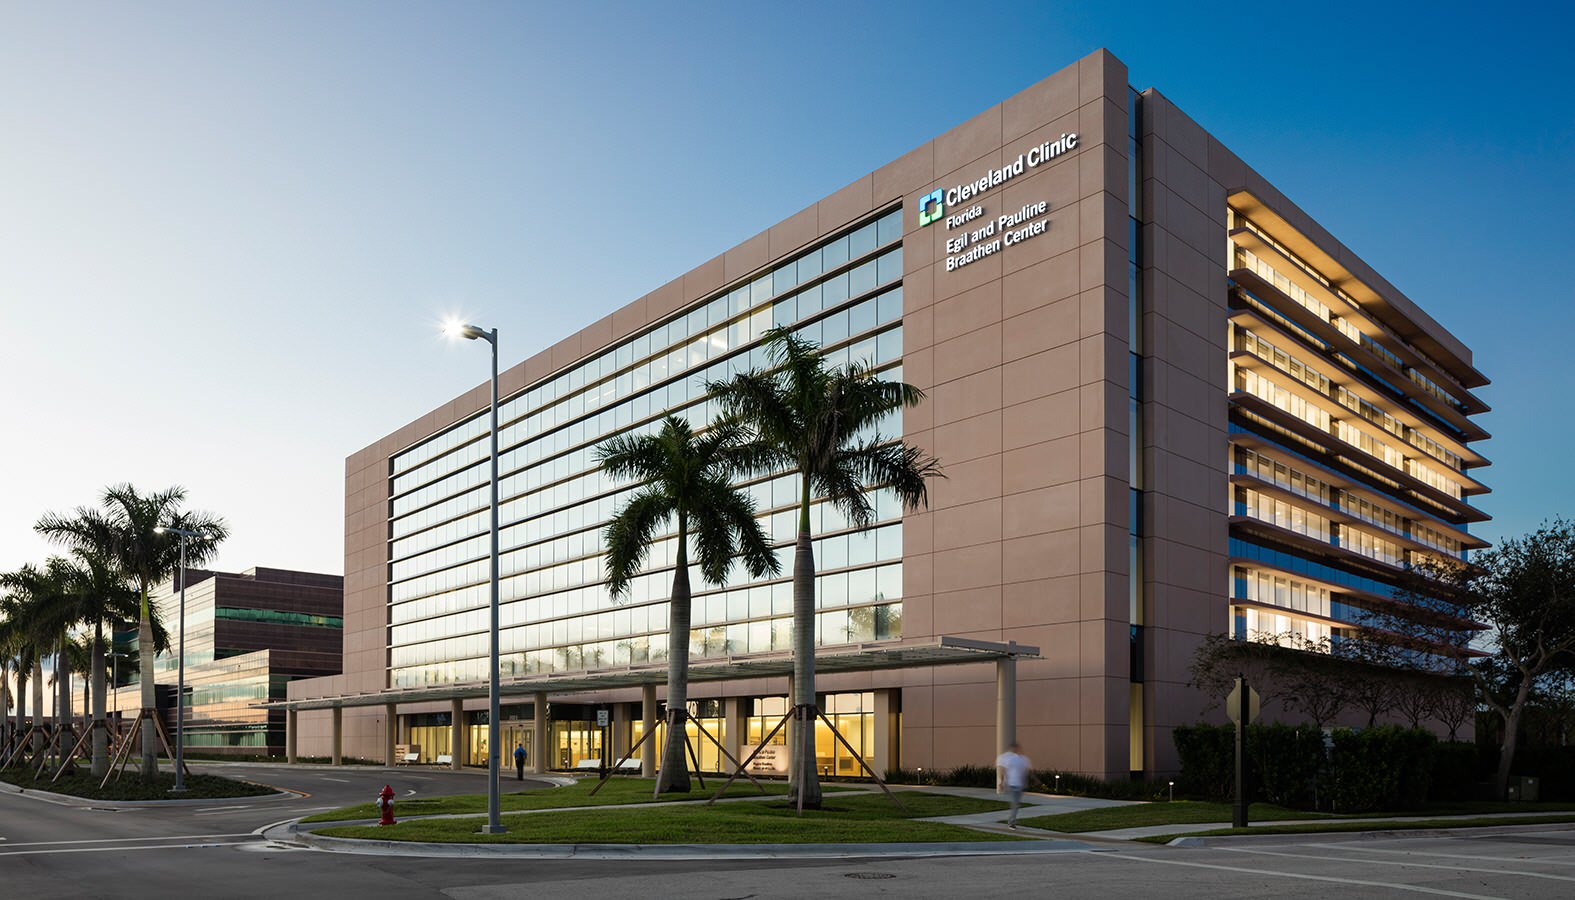 Cleveland Clinic Florida Neurological Institute Cancer Institute Som